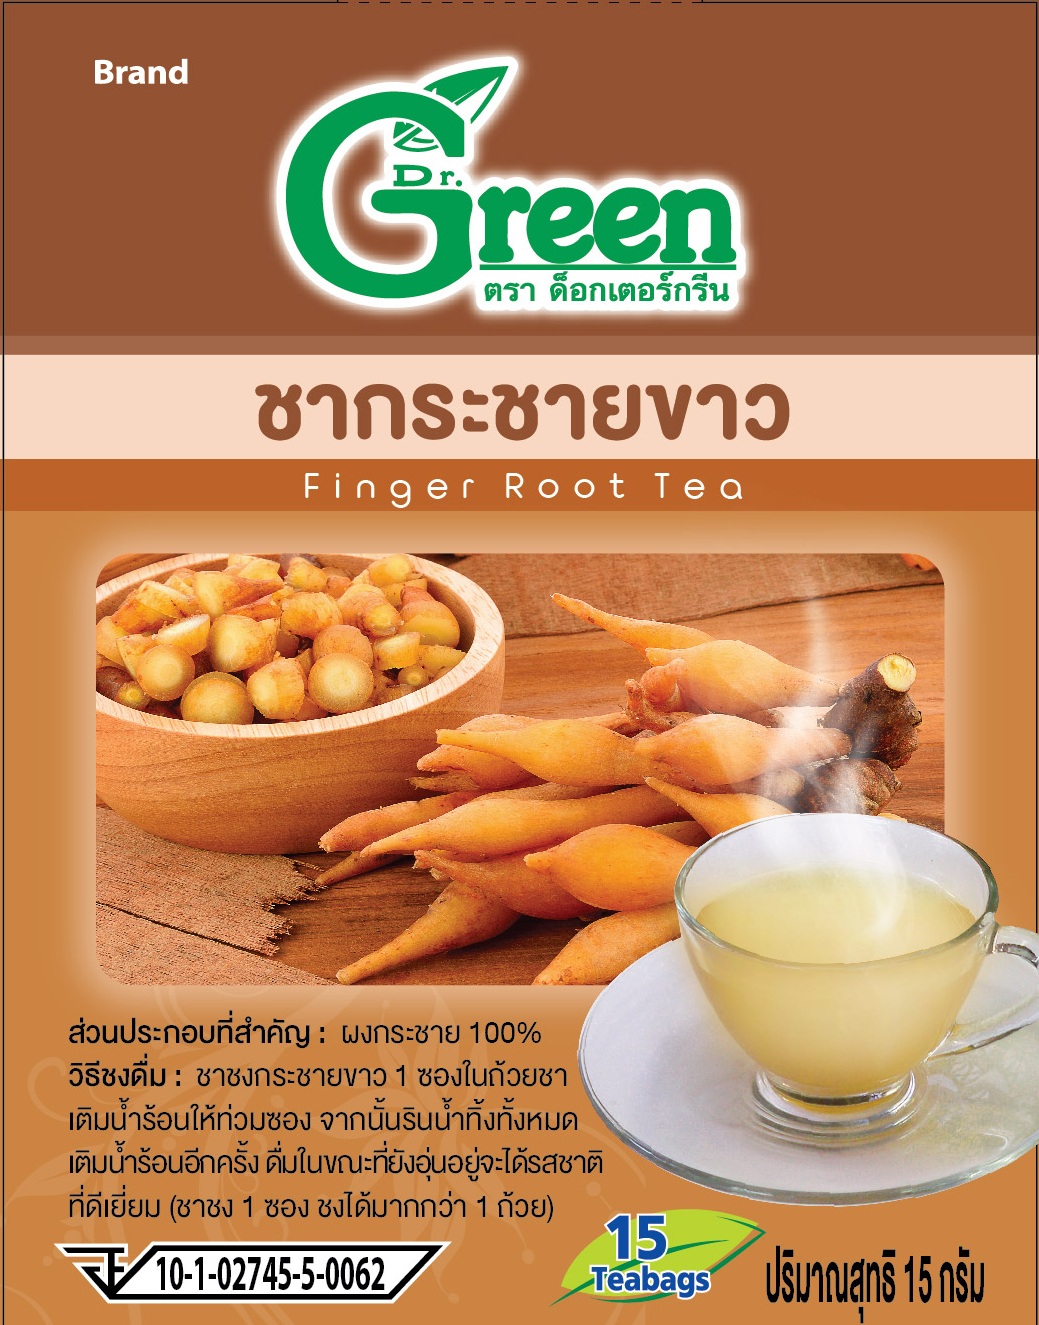 Dr.Green ชากระชายขาว 100 ซองชา (100% Finger Root Tea)